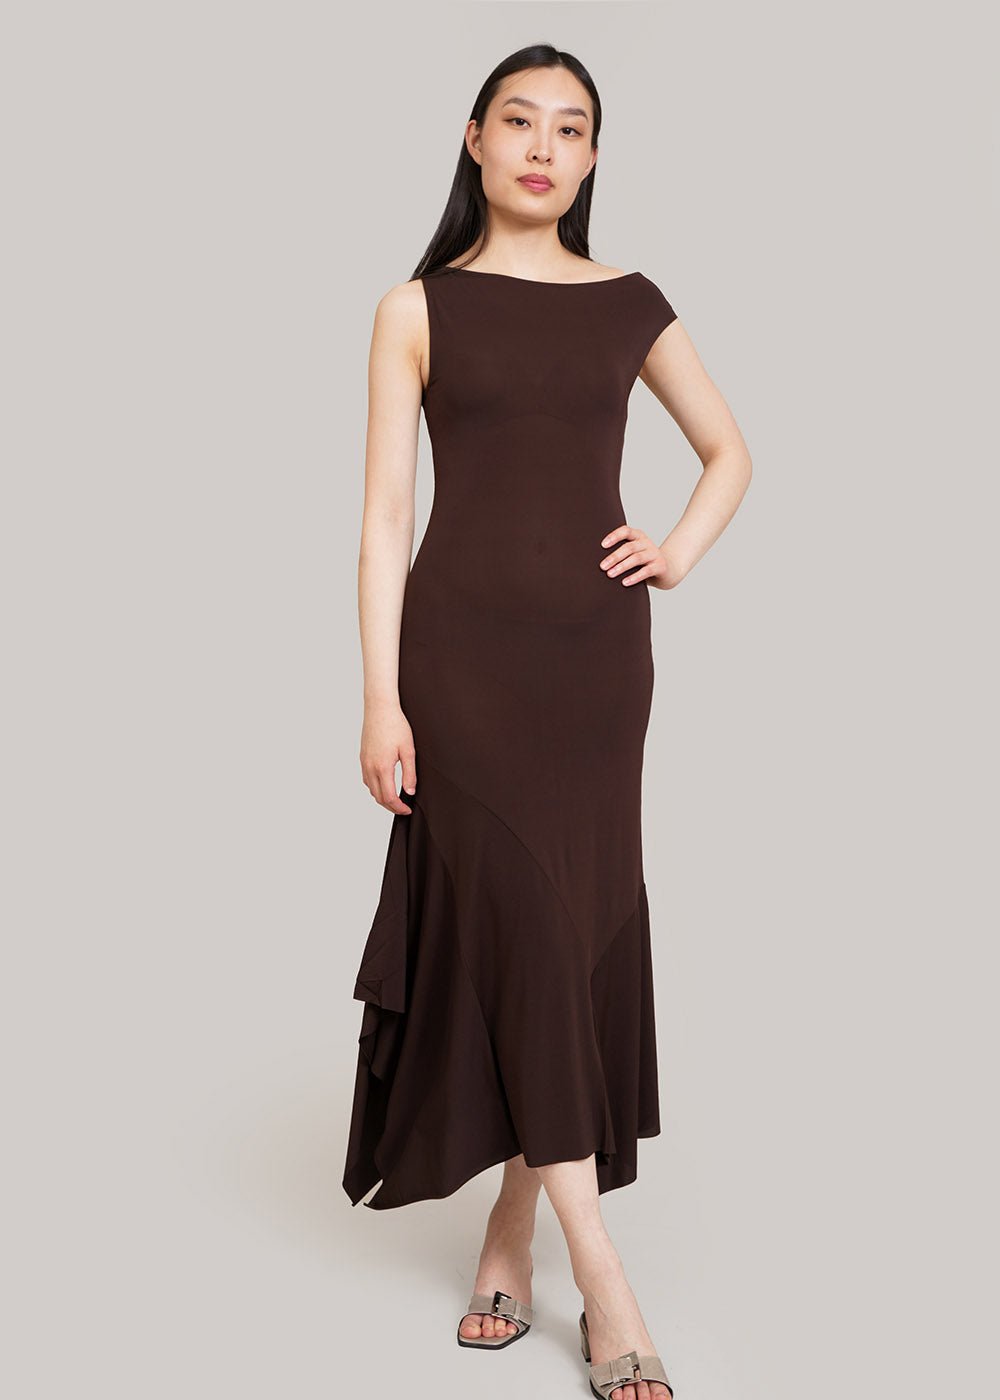 Paloma Wool Yausi Dress - New Classics Studios Sustainable Ethical Fashion Canada